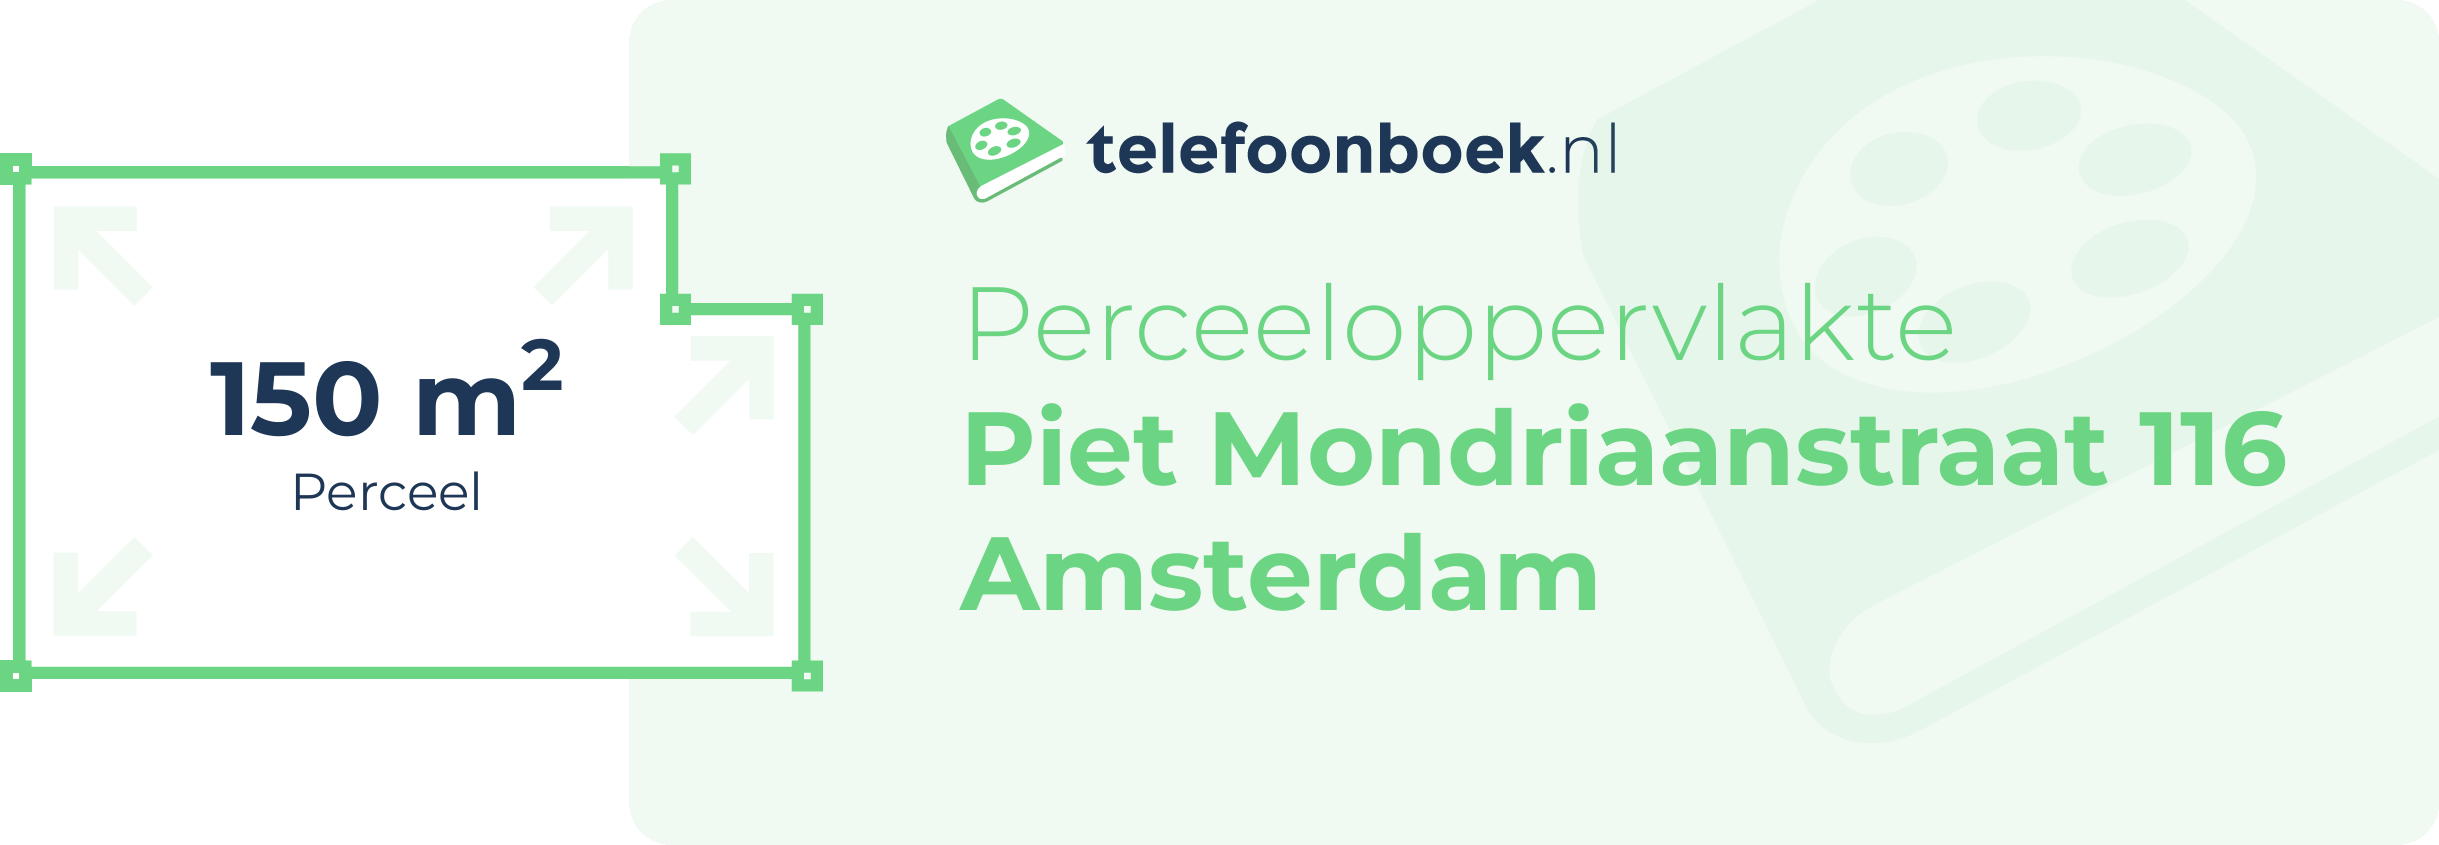 Perceeloppervlakte Piet Mondriaanstraat 116 Amsterdam